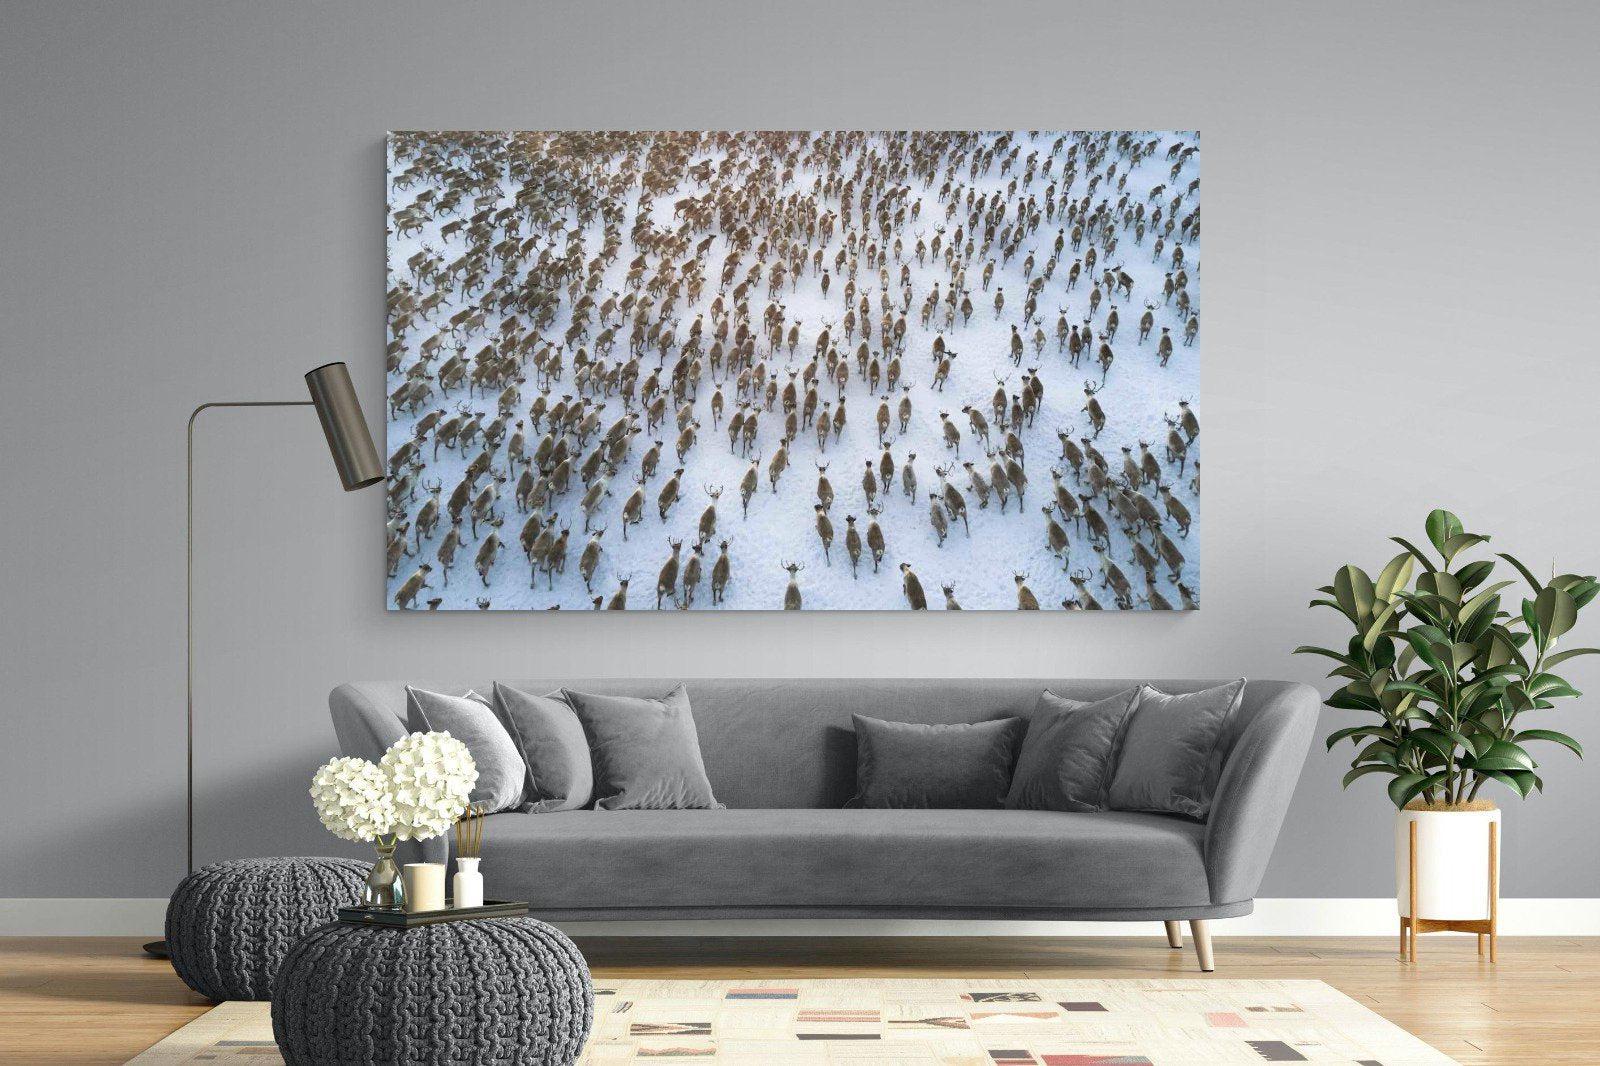 Reindeer Herd-Wall_Art-220 x 130cm-Mounted Canvas-No Frame-Pixalot